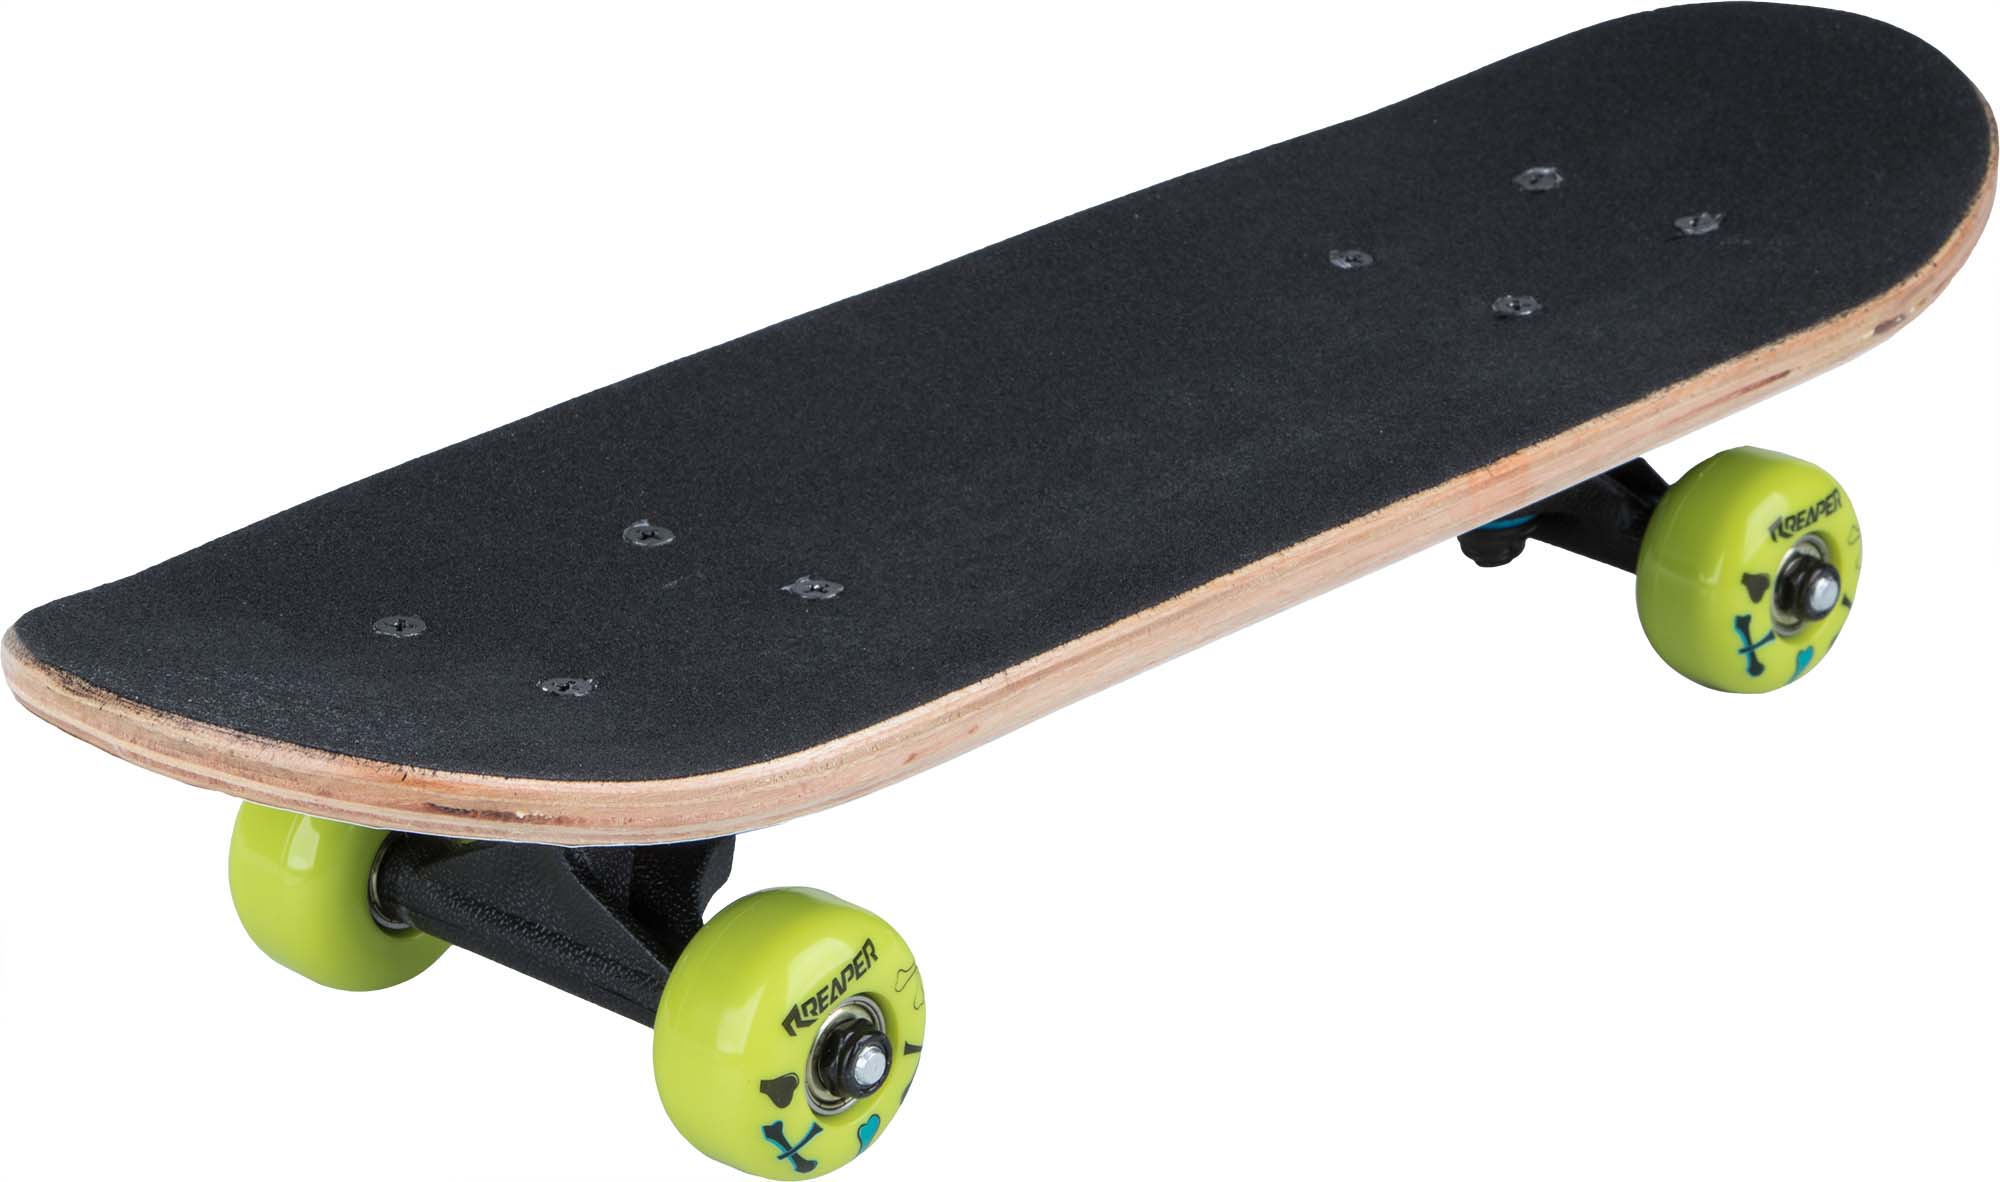 Children’s skateboard